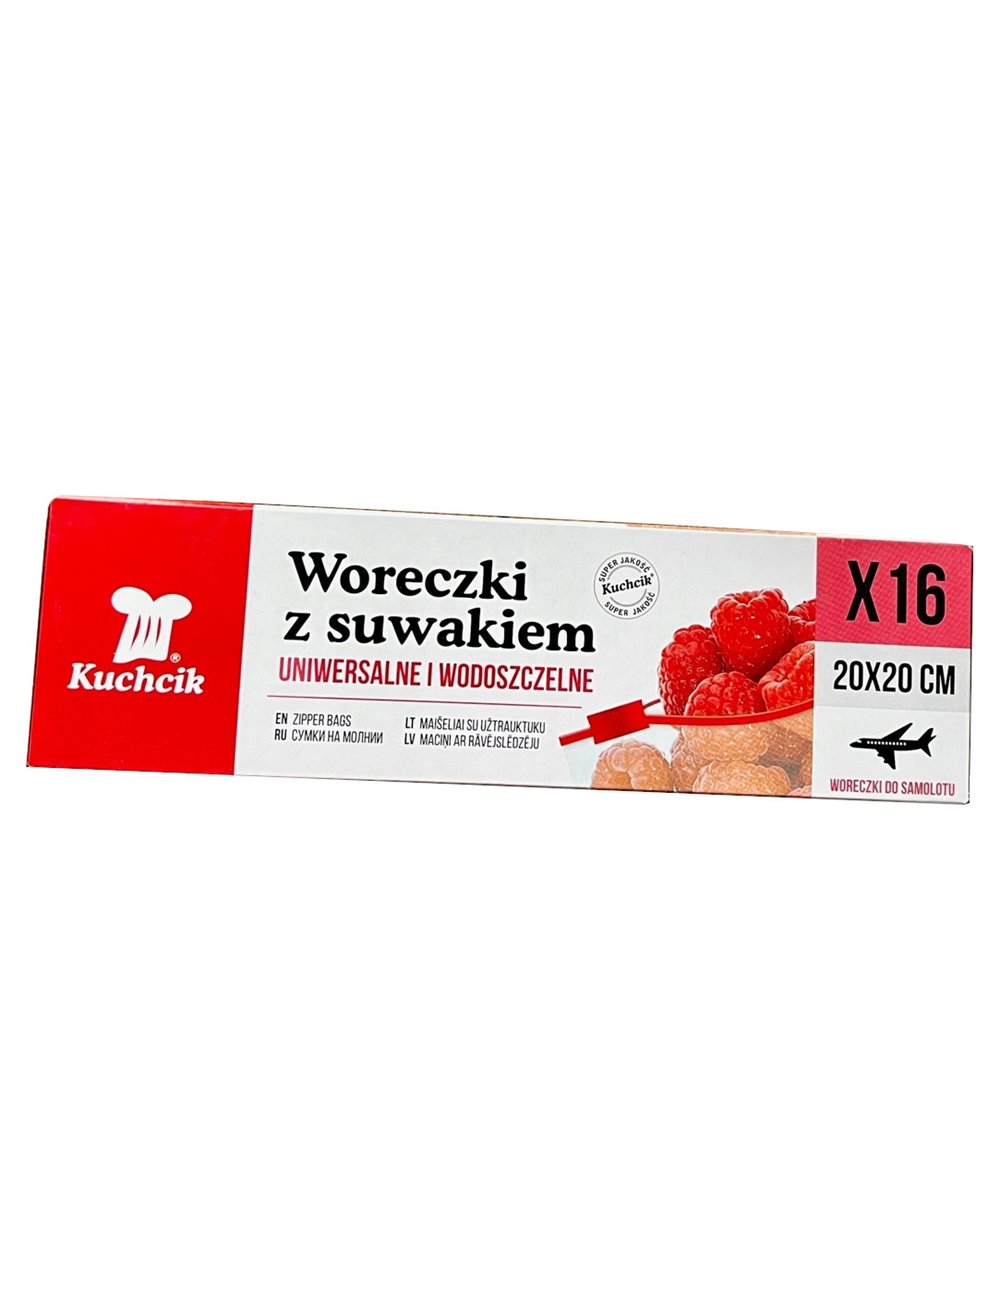 Kuchcik Woreczki z Suwakiem 20 x 20 cm (16 sztuk) - do przechowywania produktów spożywczych